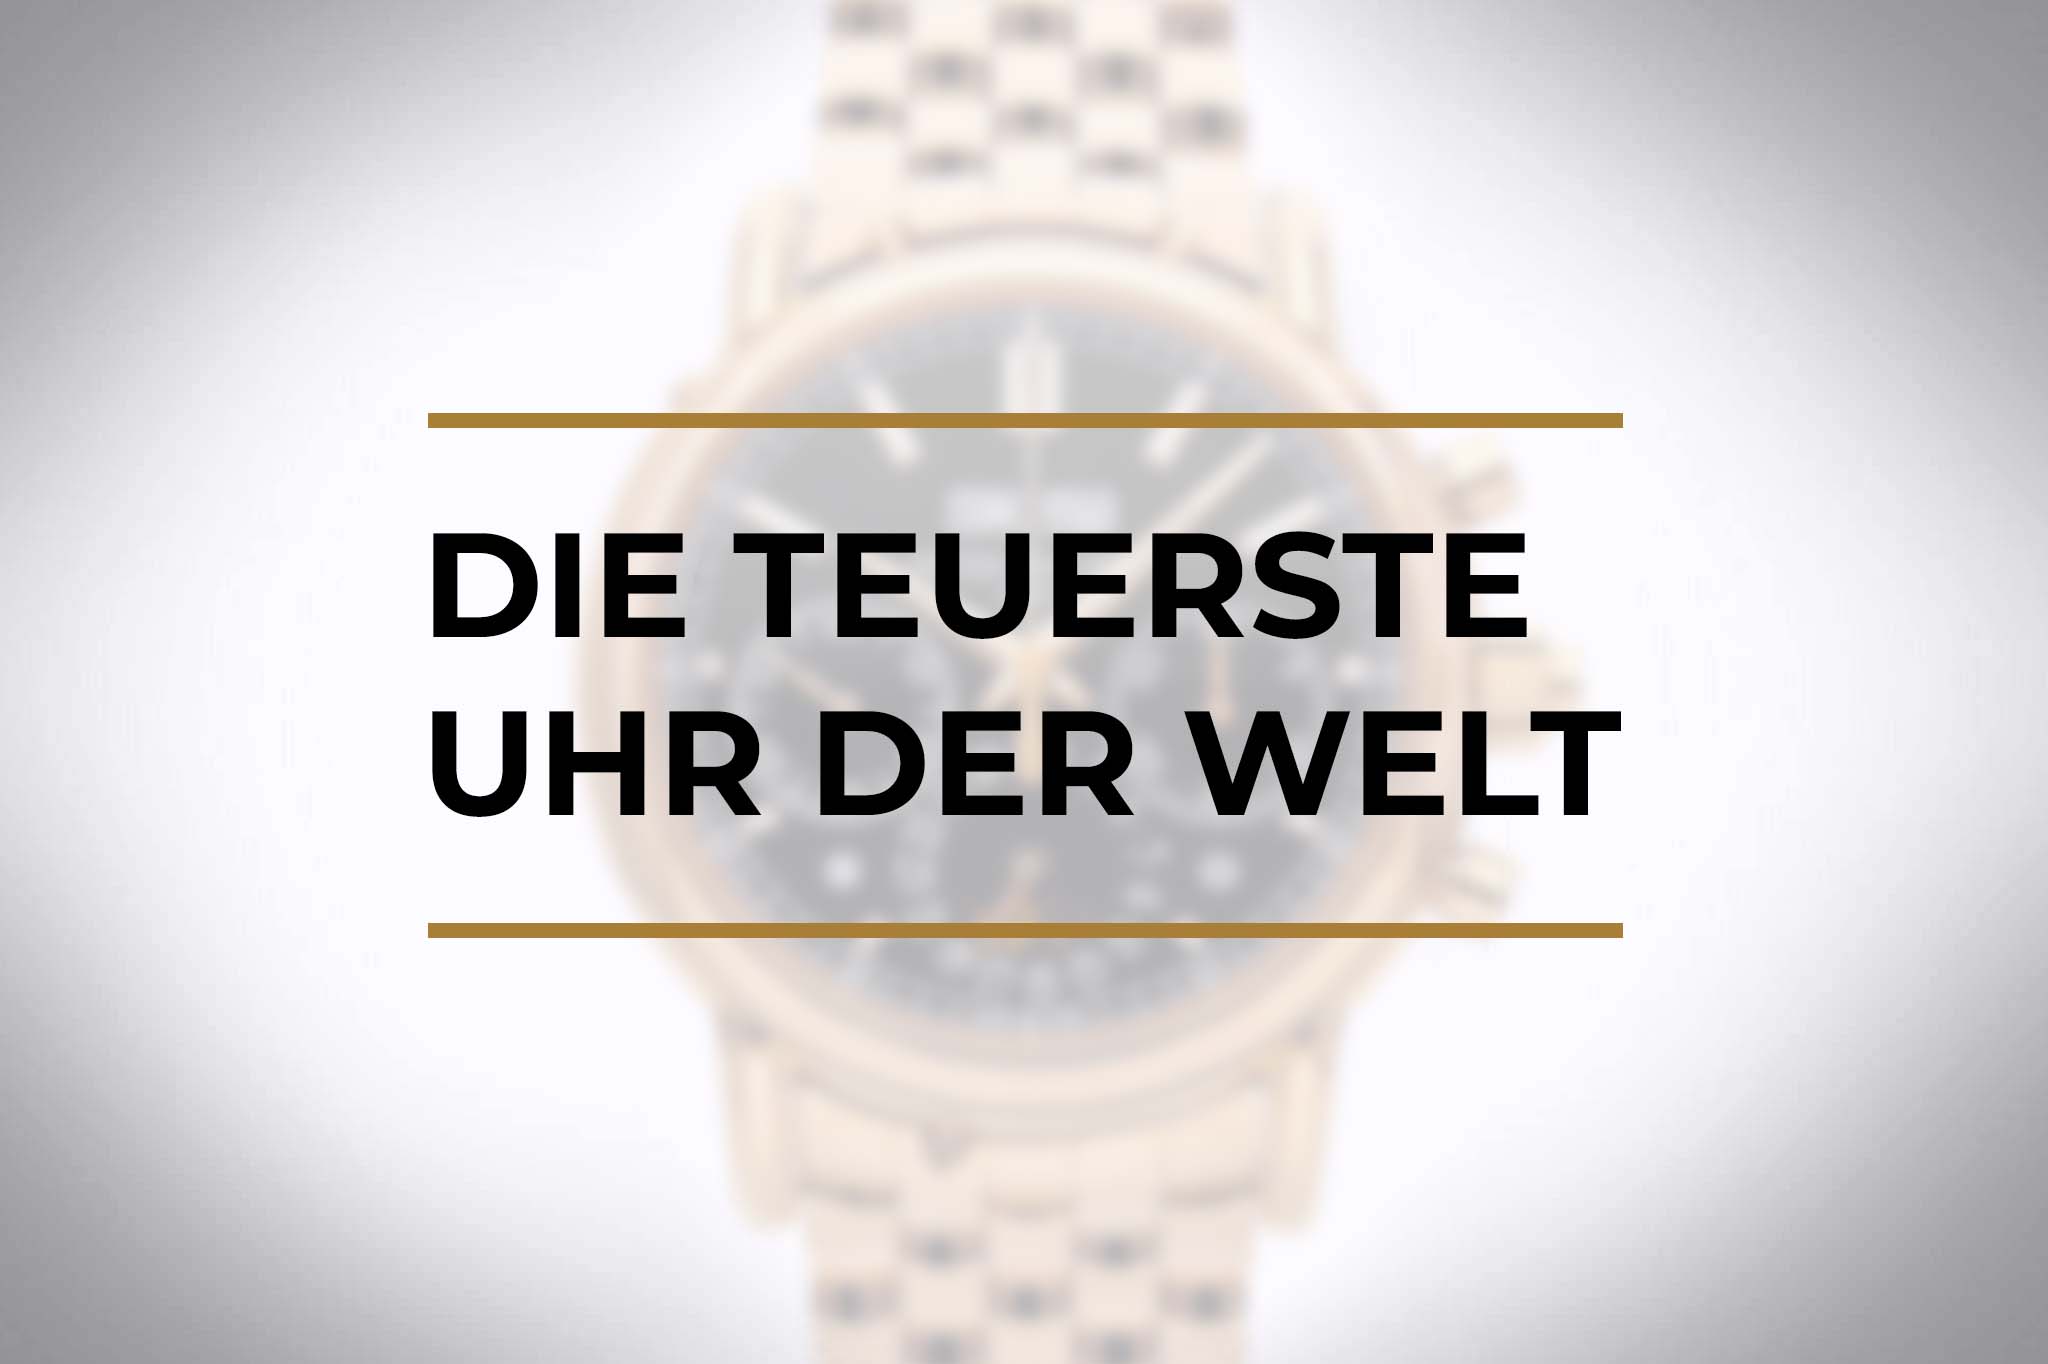 Die teuerste Uhr der Welt | Übersicht der 10 teuersten Armbanduhren